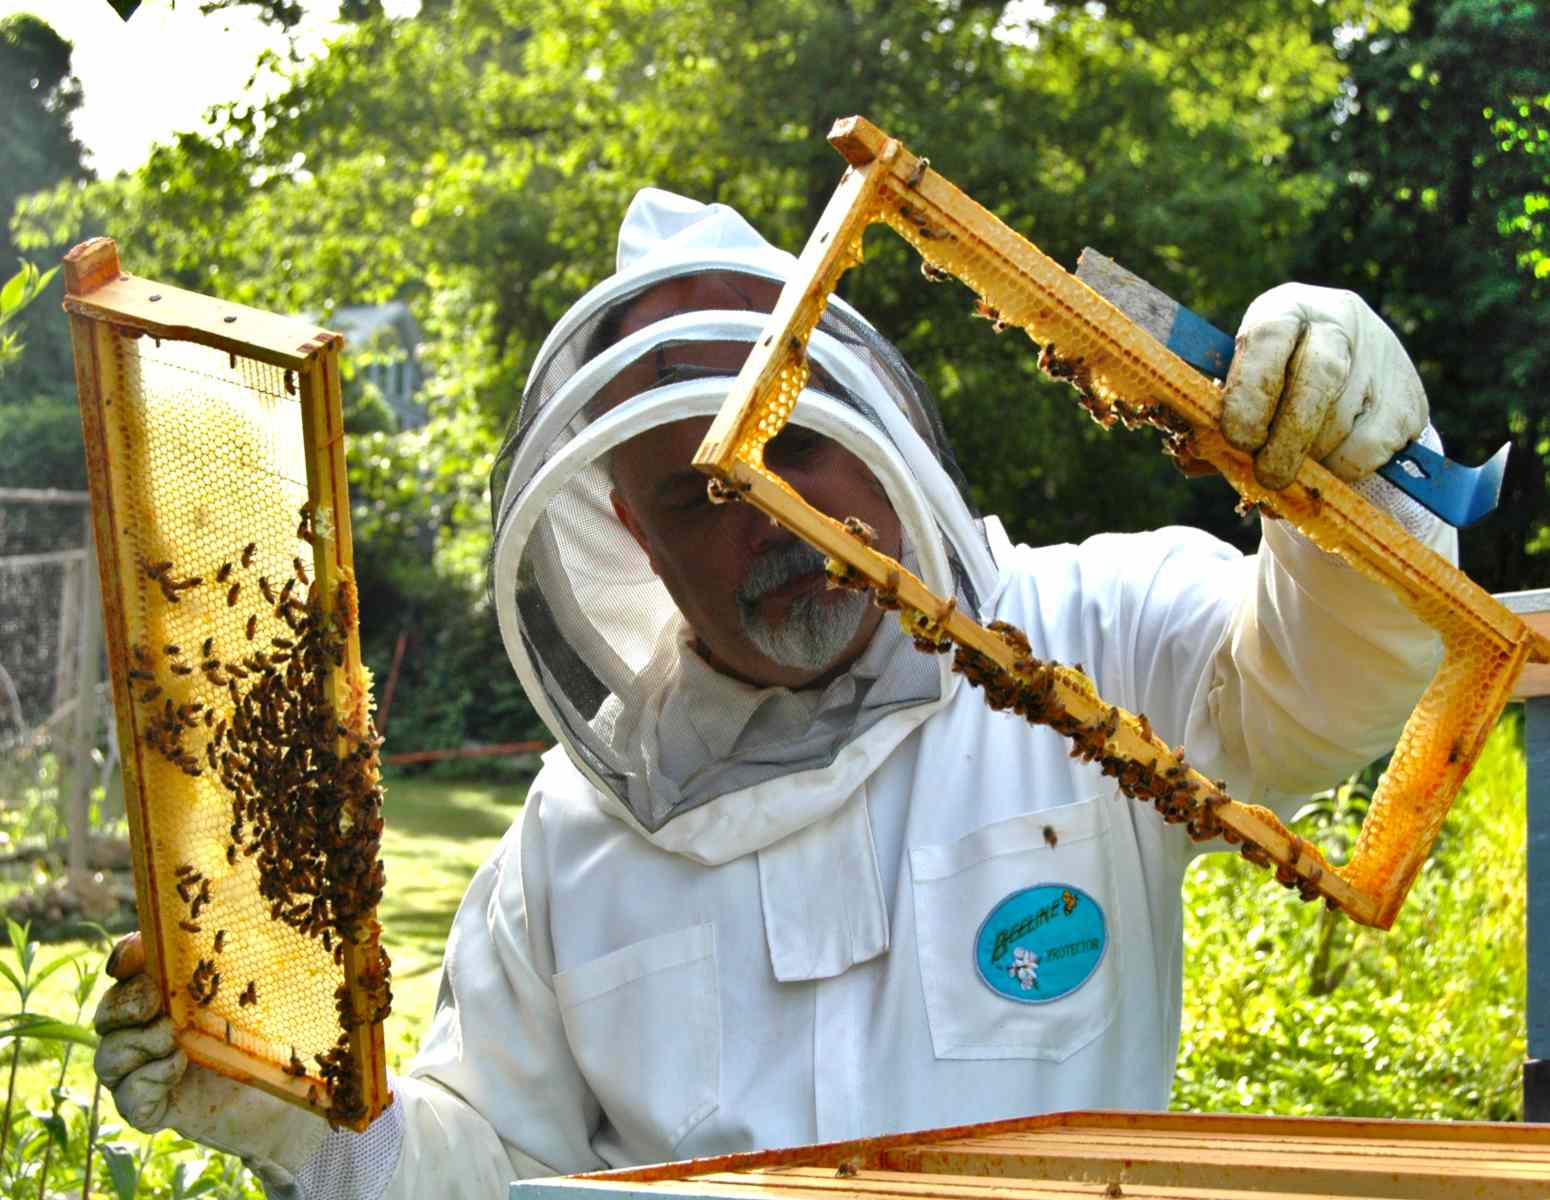 Beekeeper hive garden